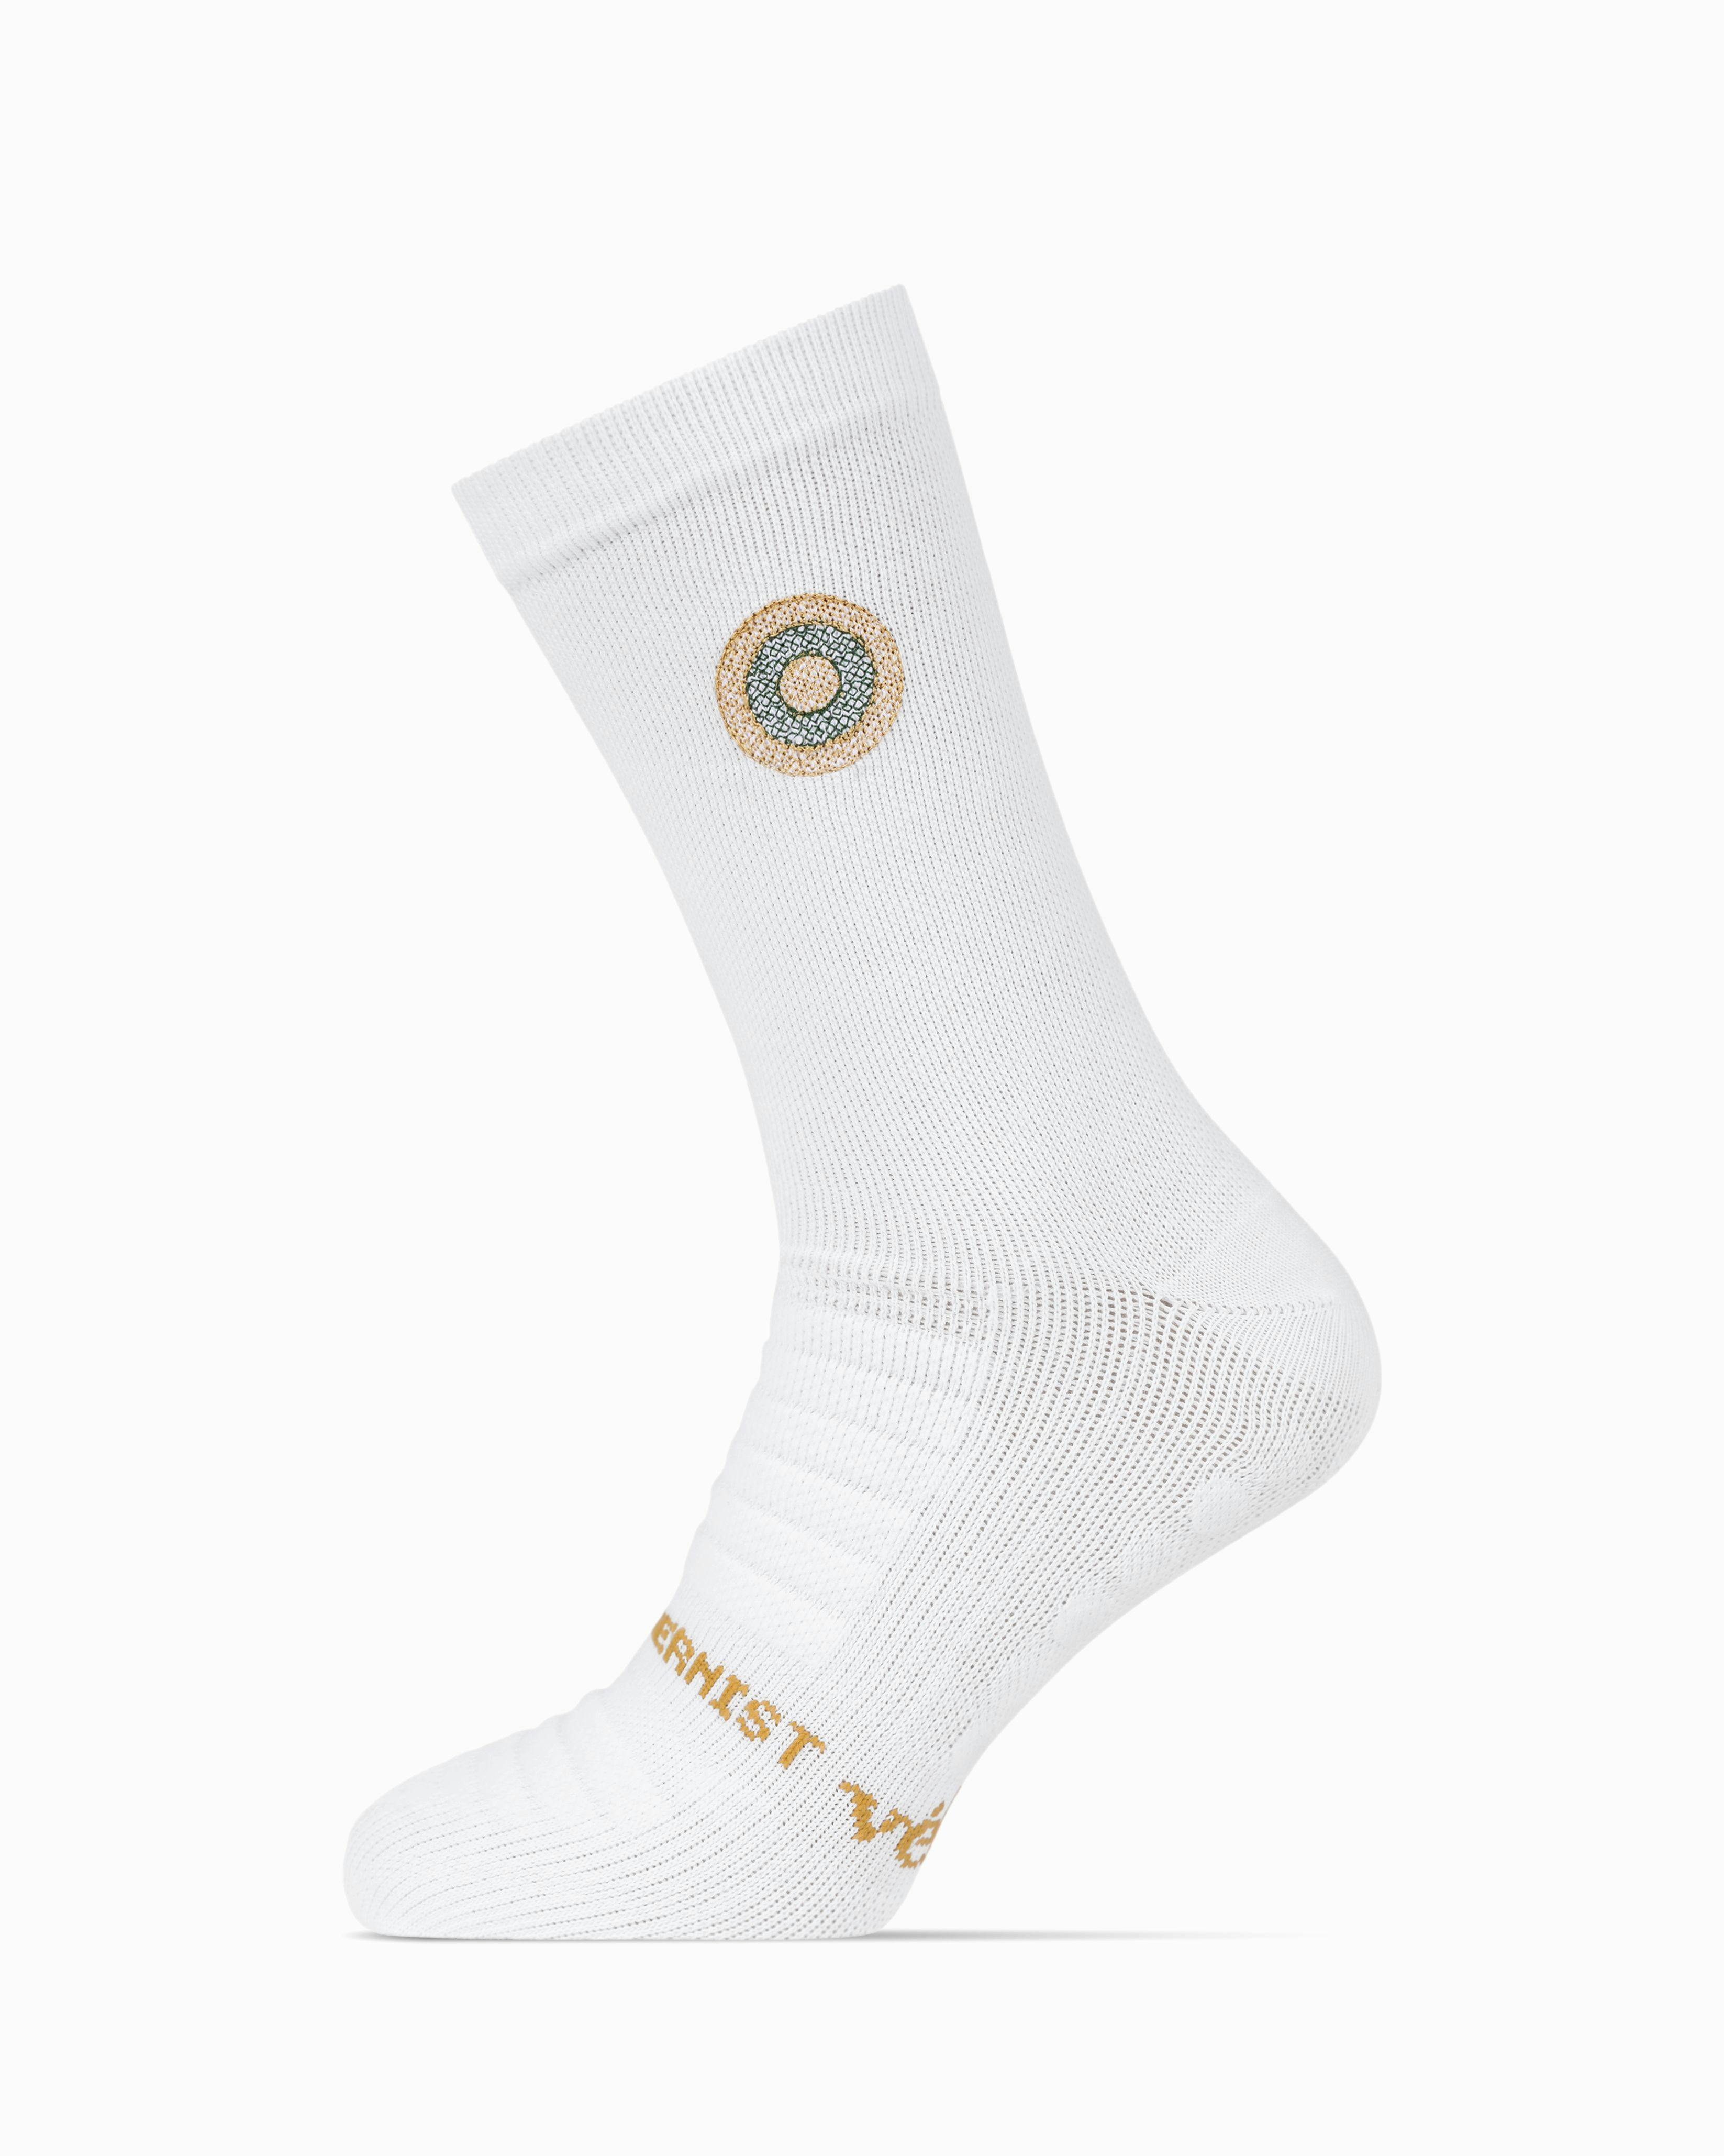 Modernist PremGripp Socks (White/Parka)